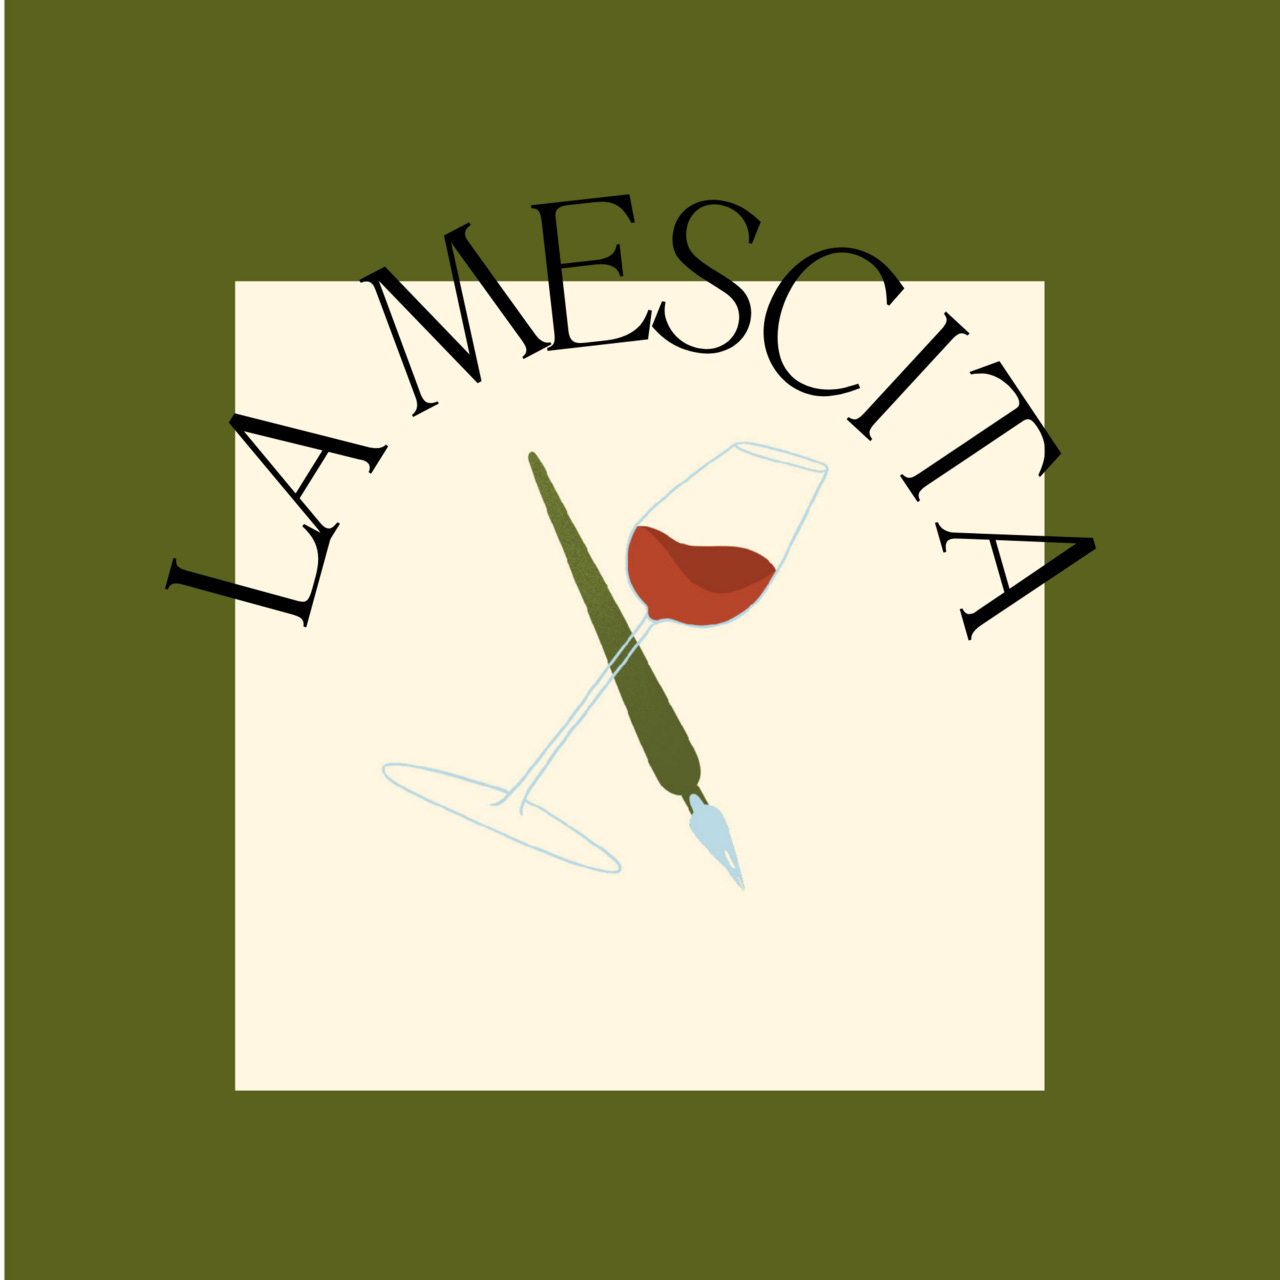 LA MESCITA: All about natural wine - from Pipette Magazine